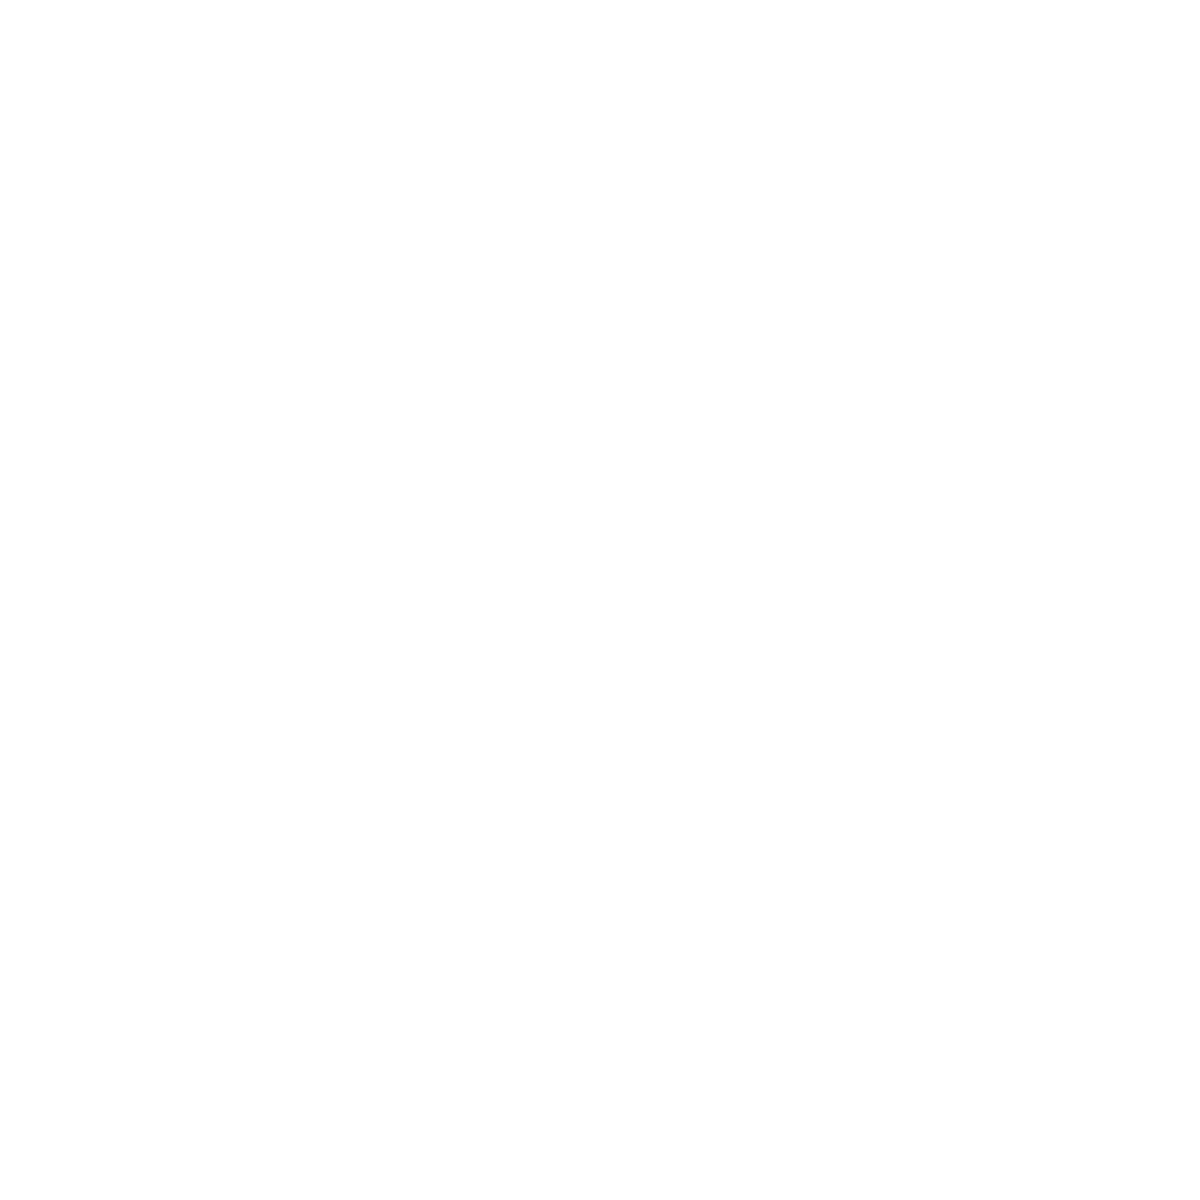 CTTEI-logo